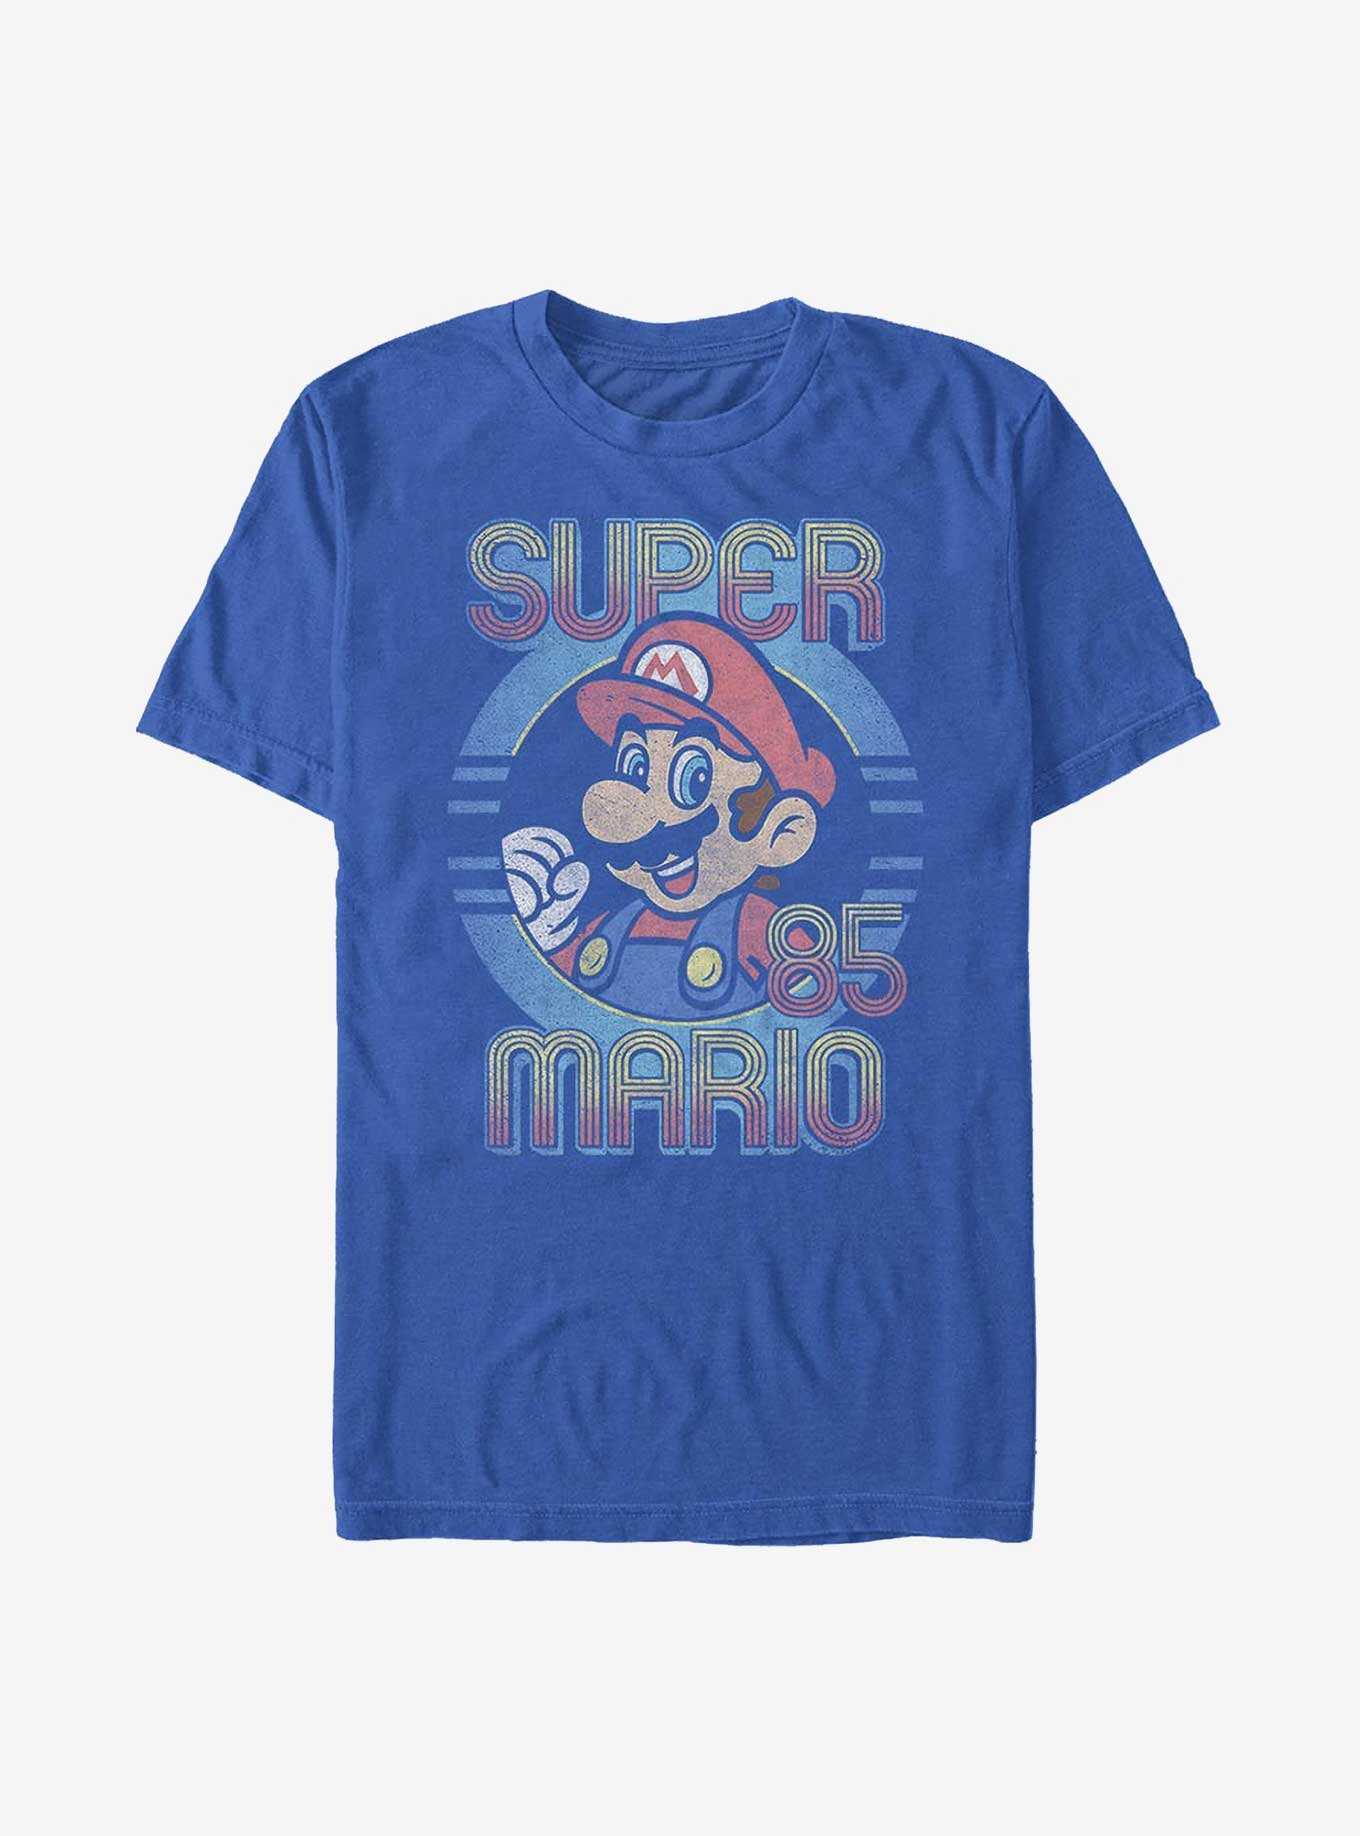 Nintendo Mario Super '85 Mario T-Shirt, , hi-res